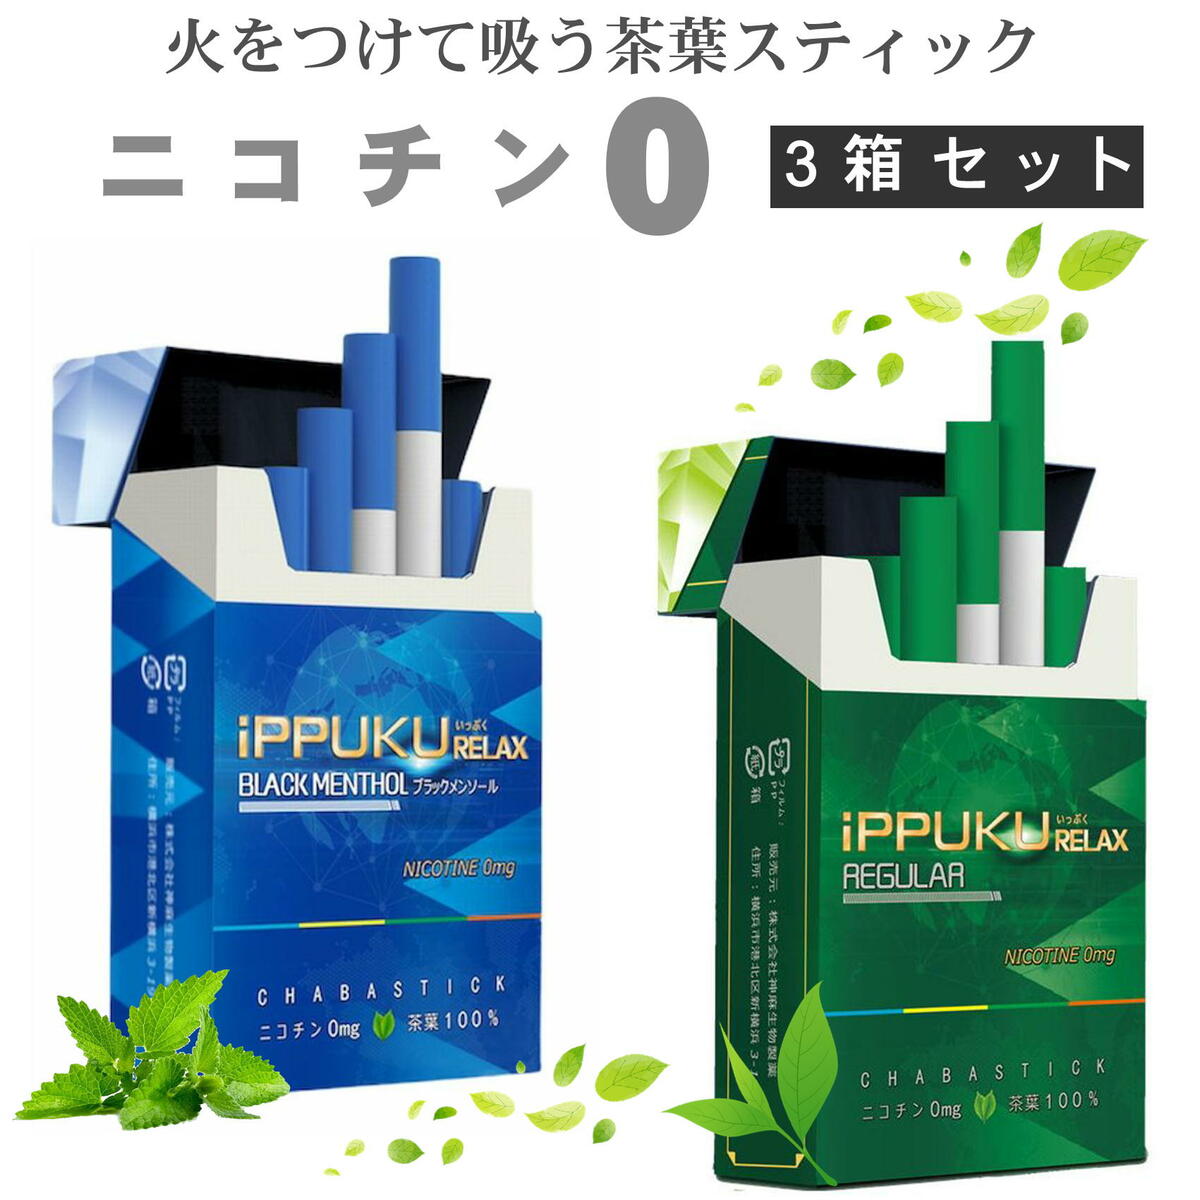 全2種類 iPPUKU RELAX <strong>茶葉スティック</strong> 禁煙タバコ 禁煙グッズ 禁煙 タバコ 茶葉 スティック ニコチン0 ニコチンゼロ ブラック メンソール レギュラー 3箱セット